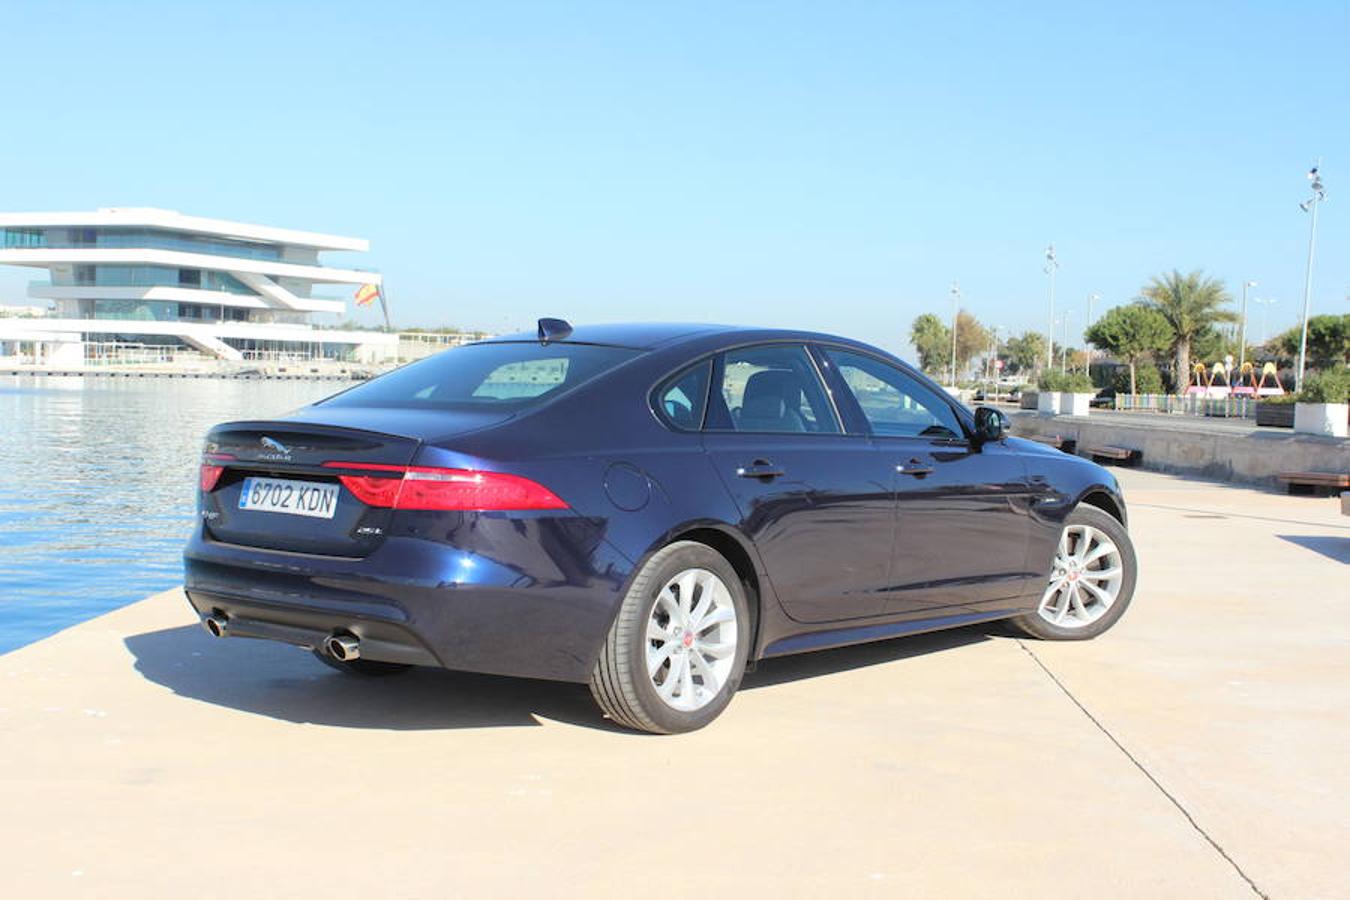 Jaguar estrena motor gasolina de 200 CV en la gama XF para dotar su elegante berlina de mayor dinamismo sin perder confort